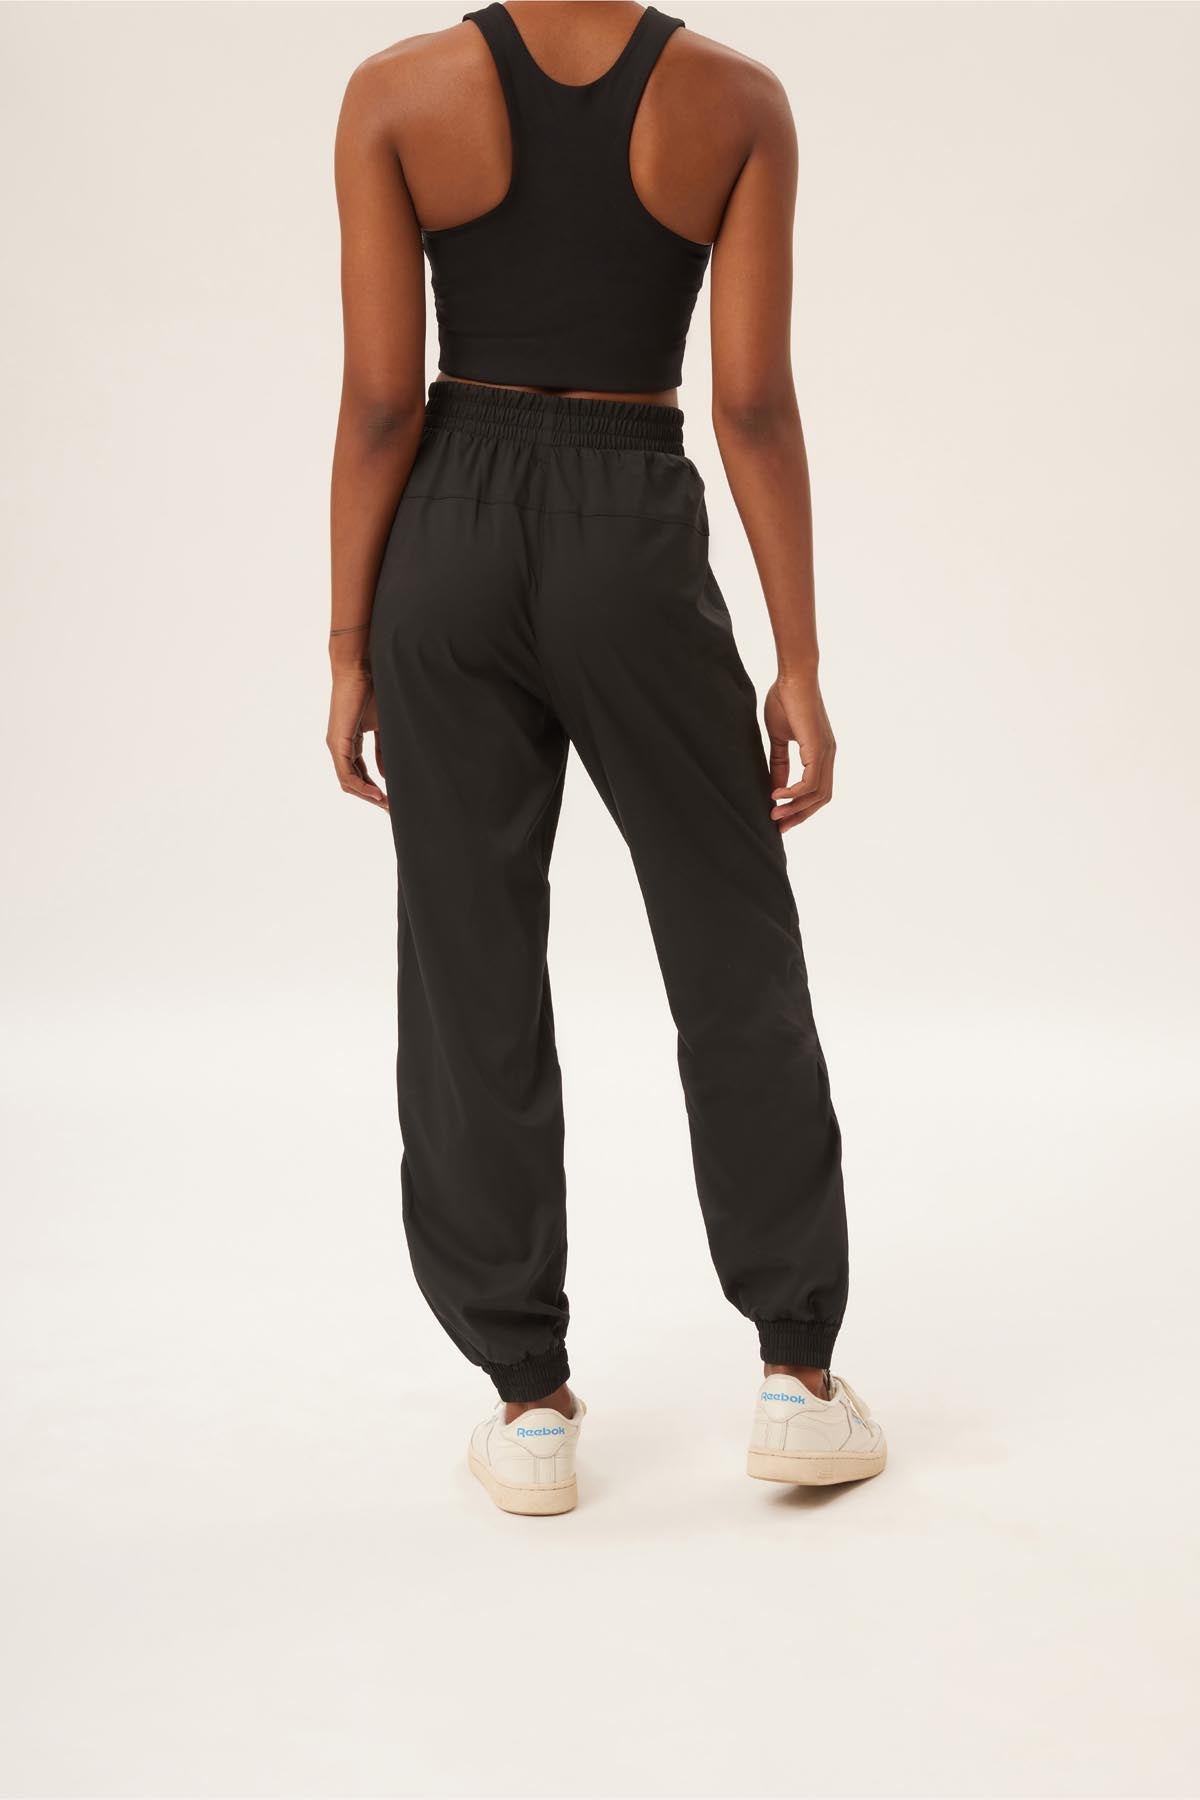 Buy Black Track Pants for Women by Teamspirit Online